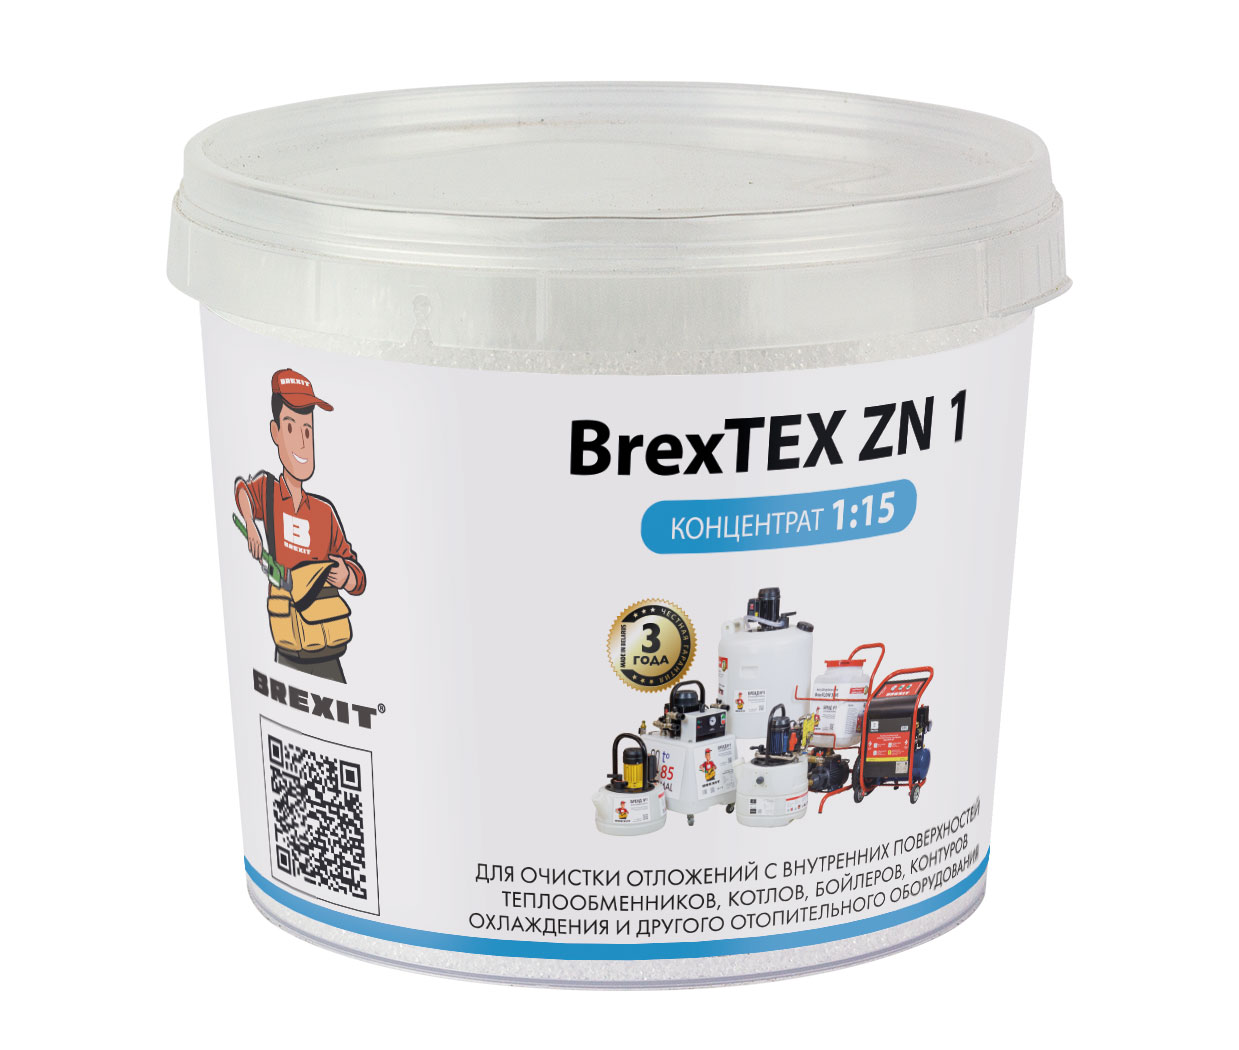 Порошковый реагент BREXIT BrexTEX ZN 1 для промывки теплообменников